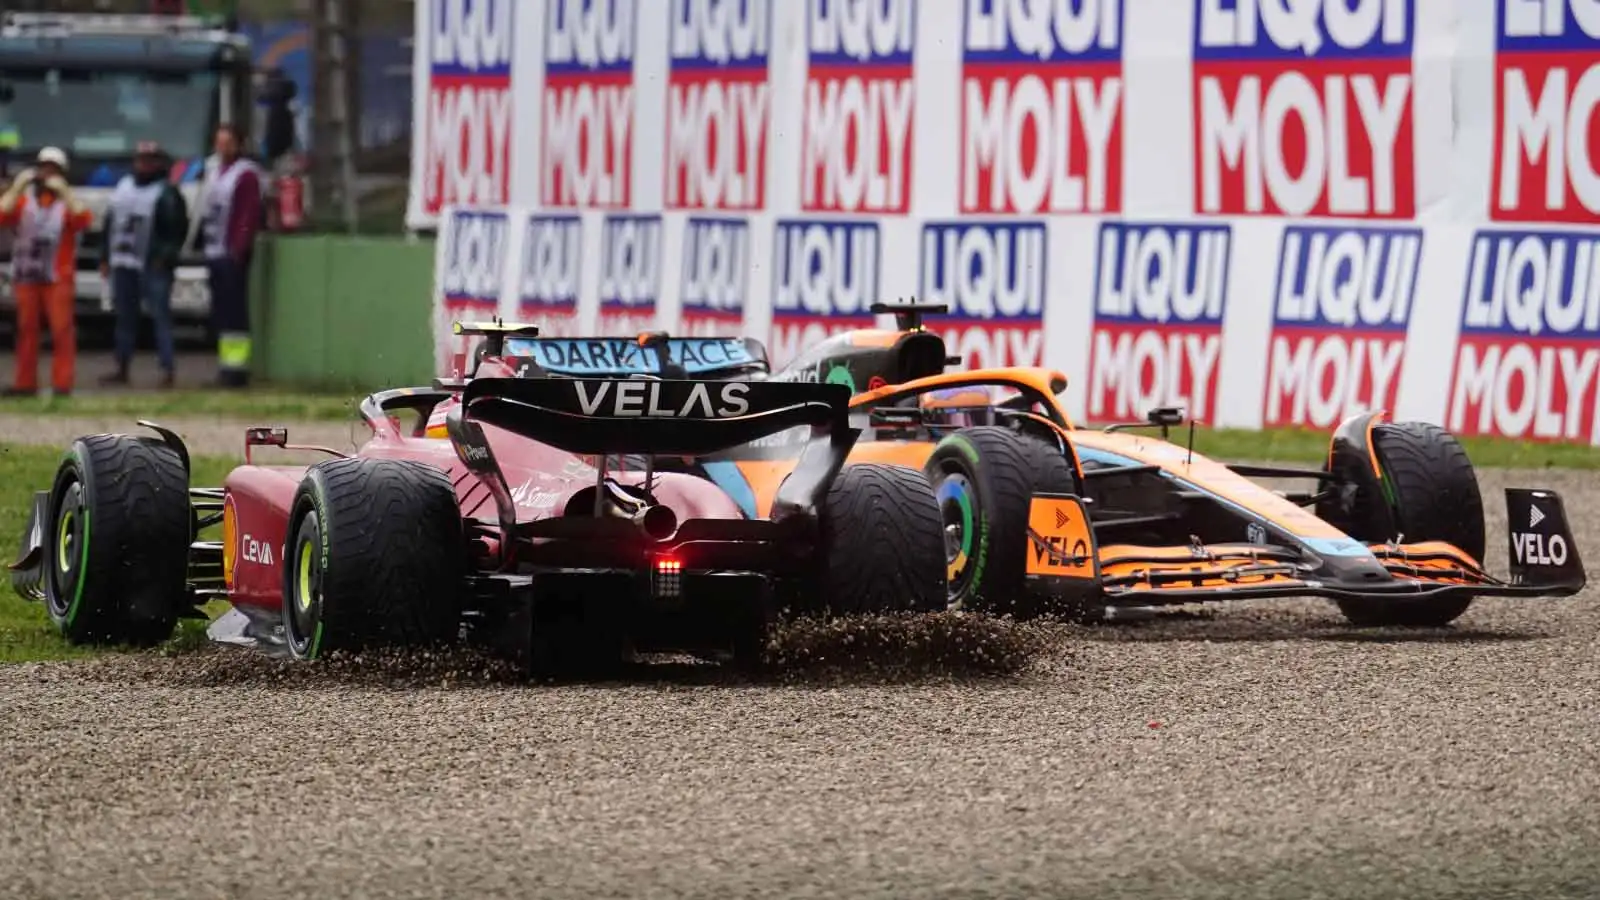 Carlos Sainz and Daniel Ricciardo in the gravel. Imola April 2022.